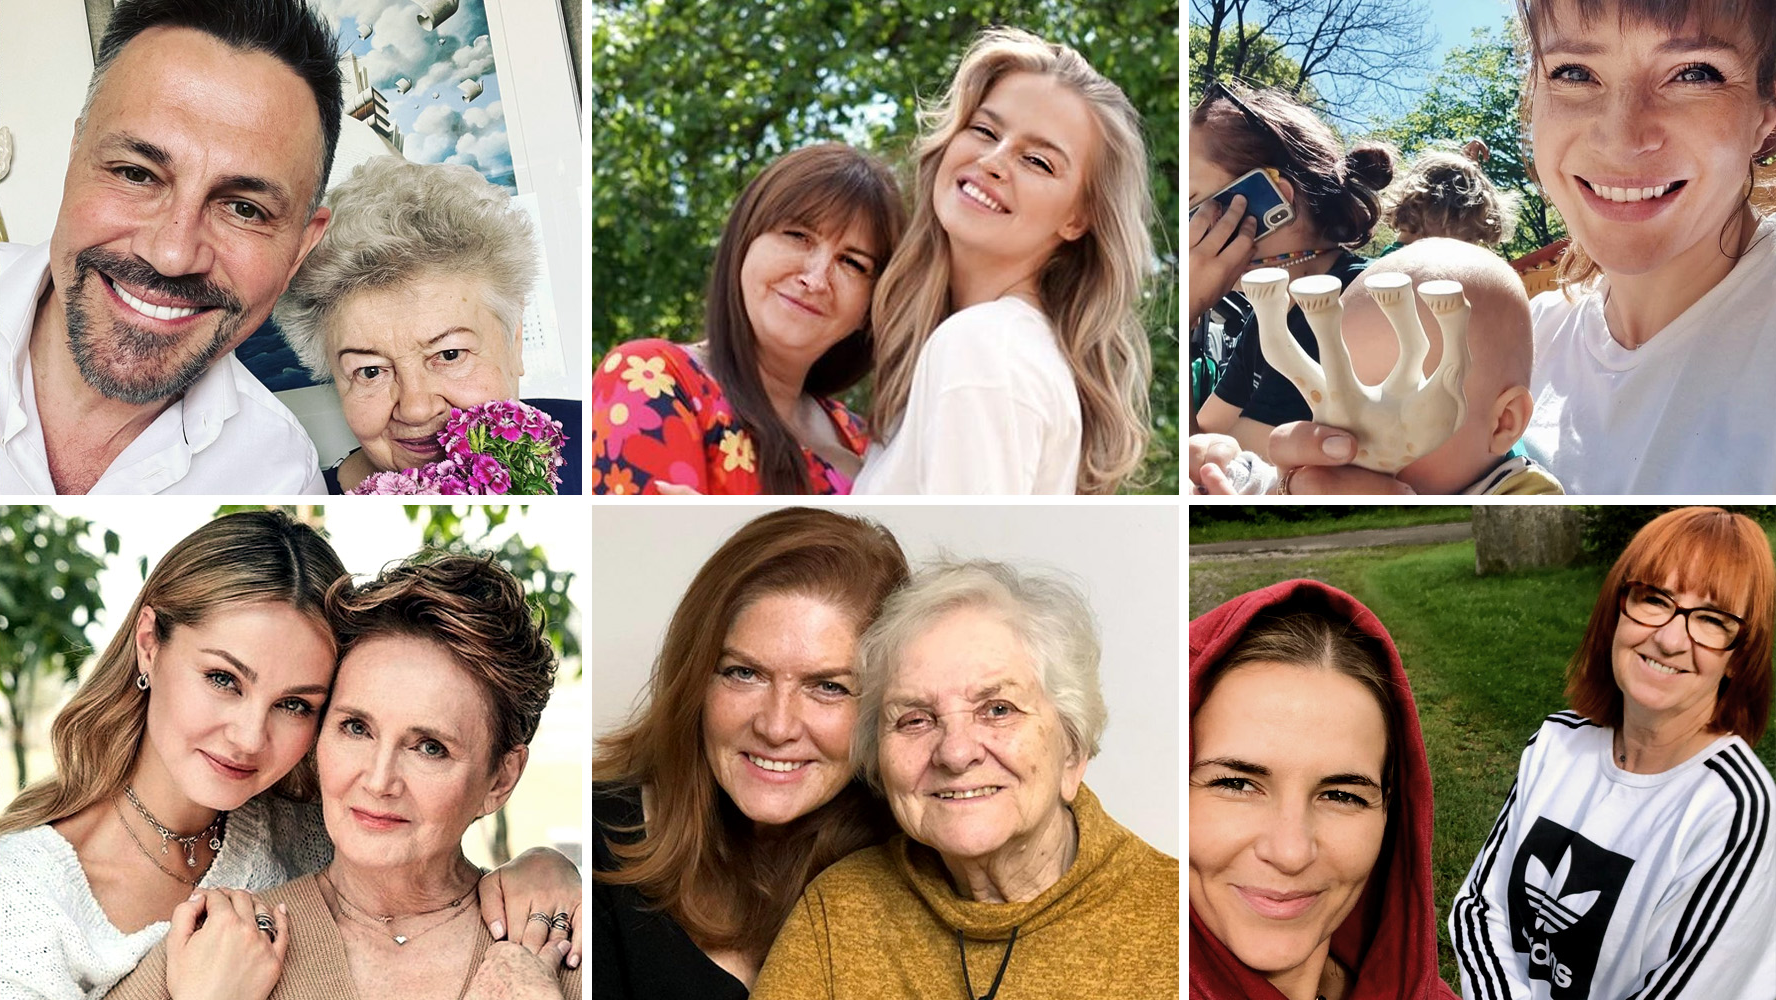 Tak gwiazdy Polsatu świętowały Dzień Matki. Zobacz zdjęcia!